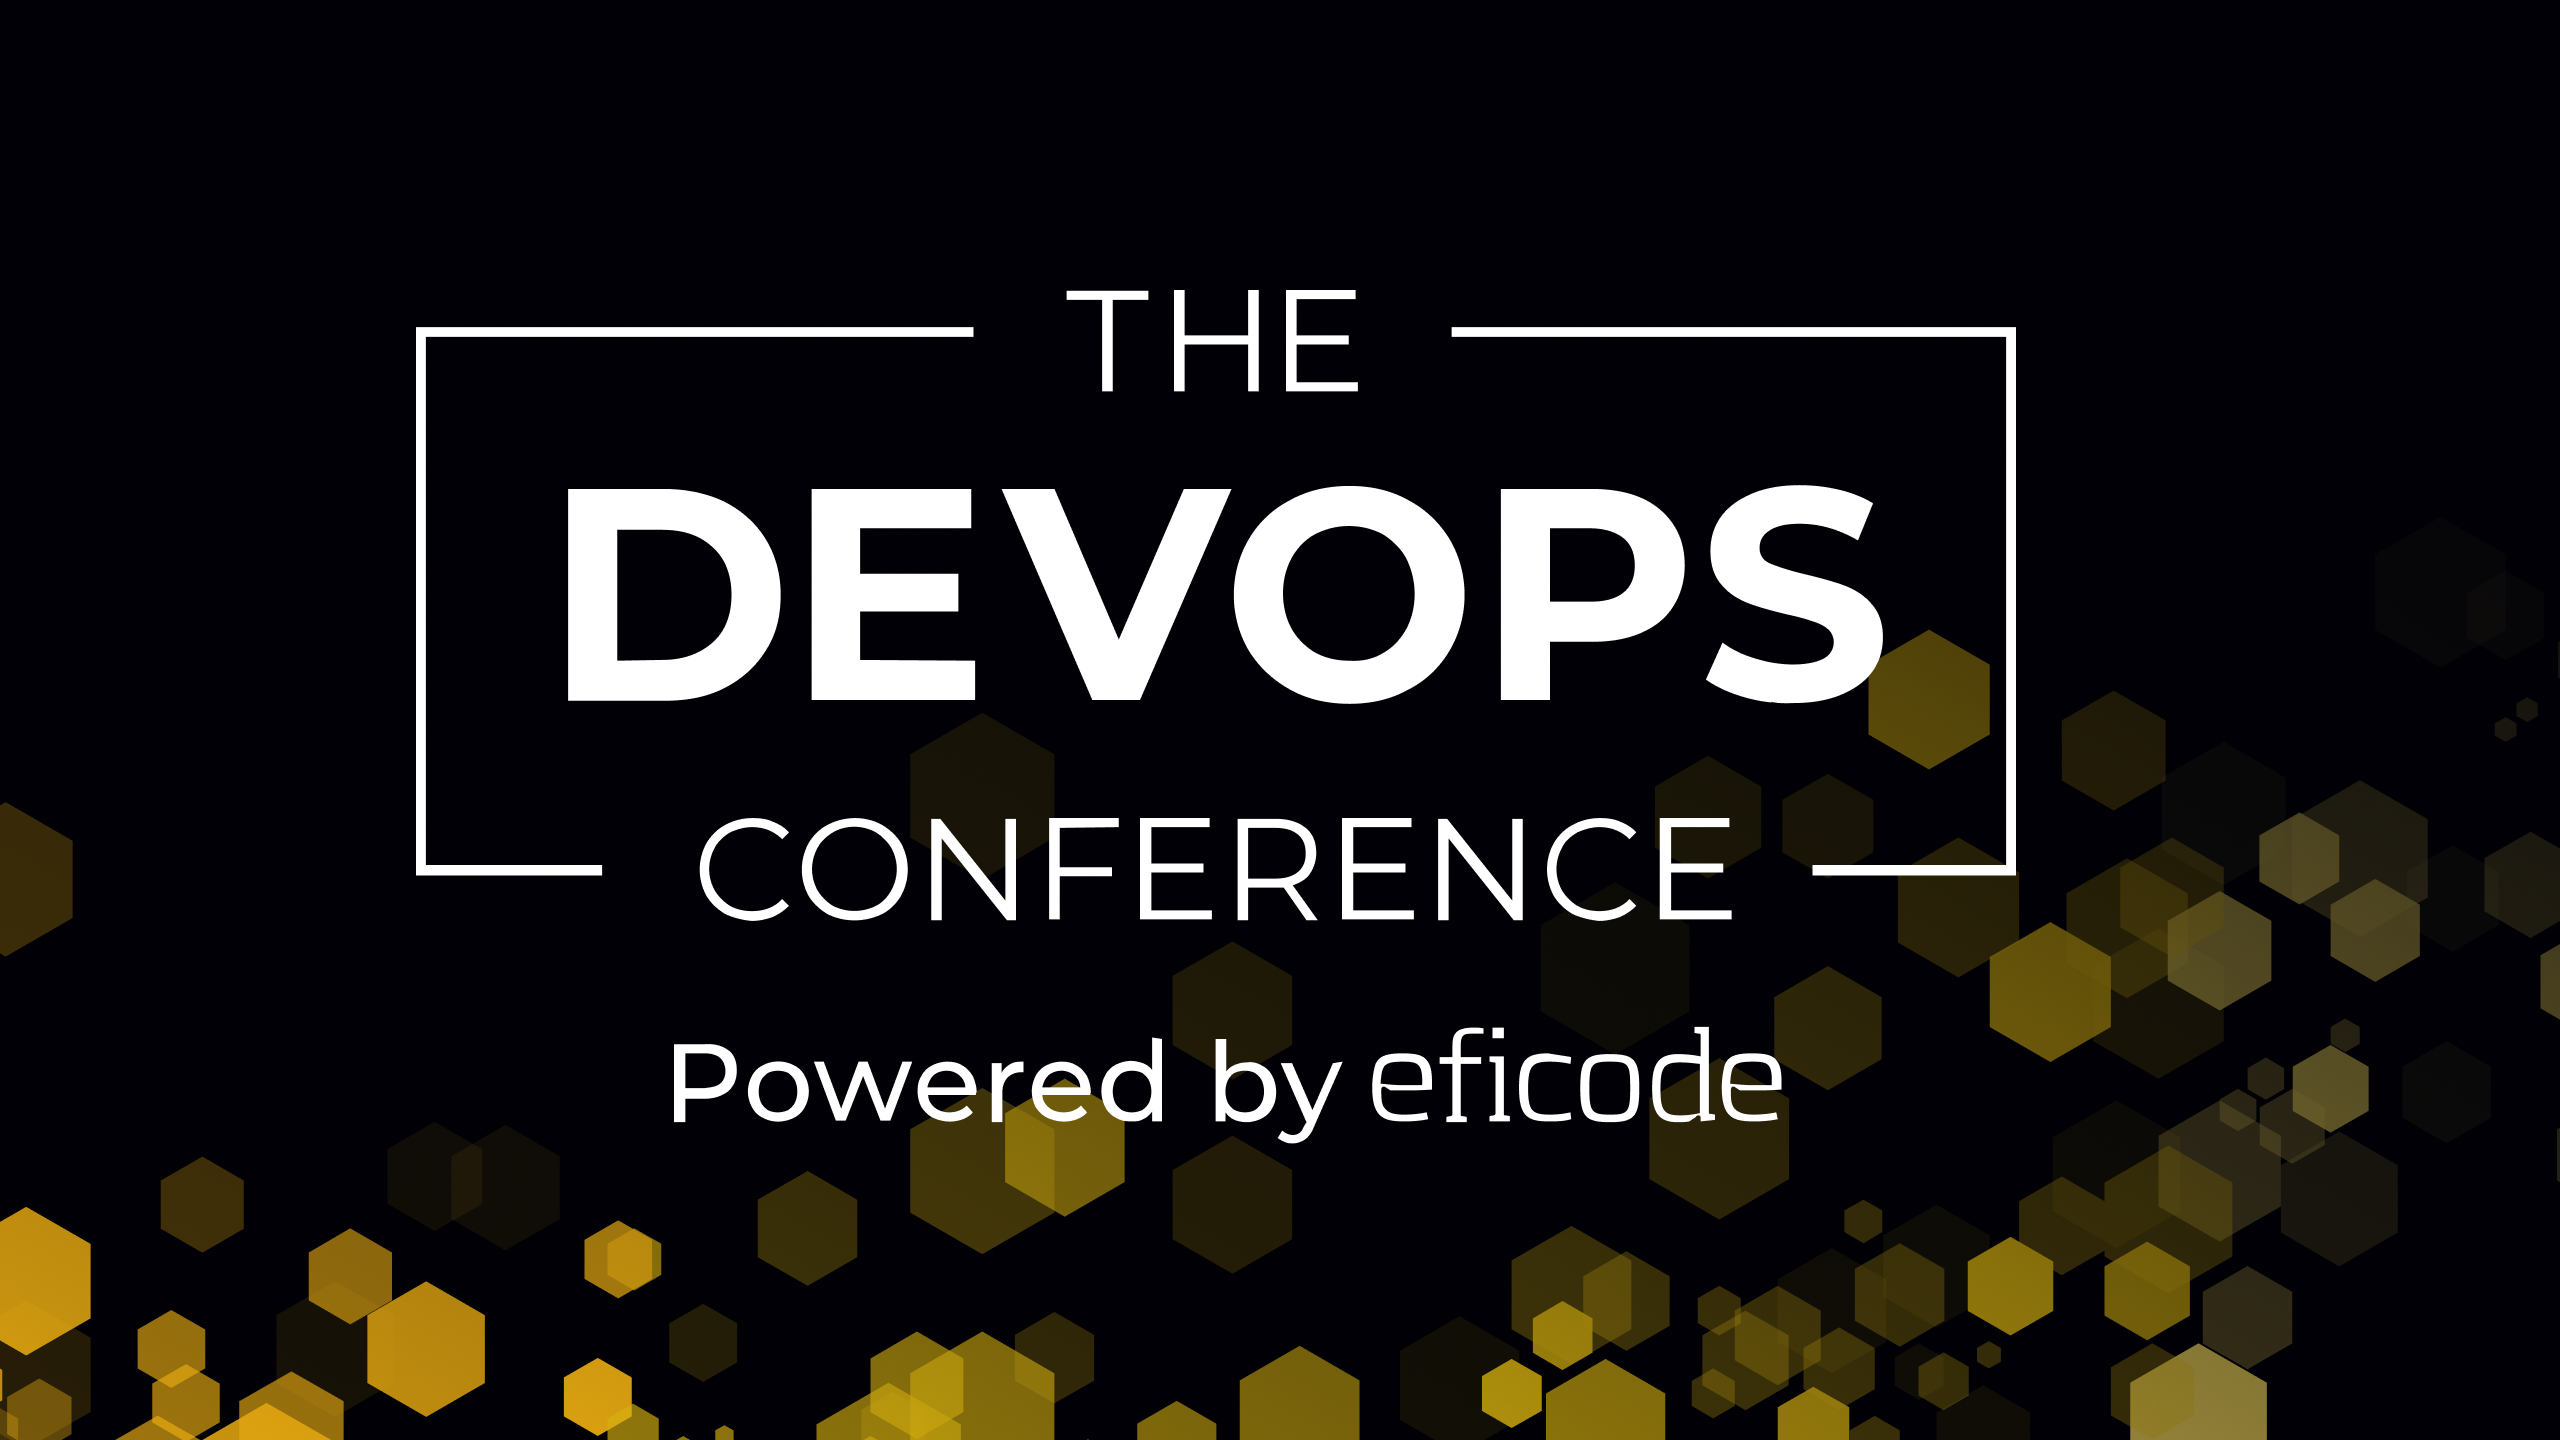 The DEVOPS Conference logo banner